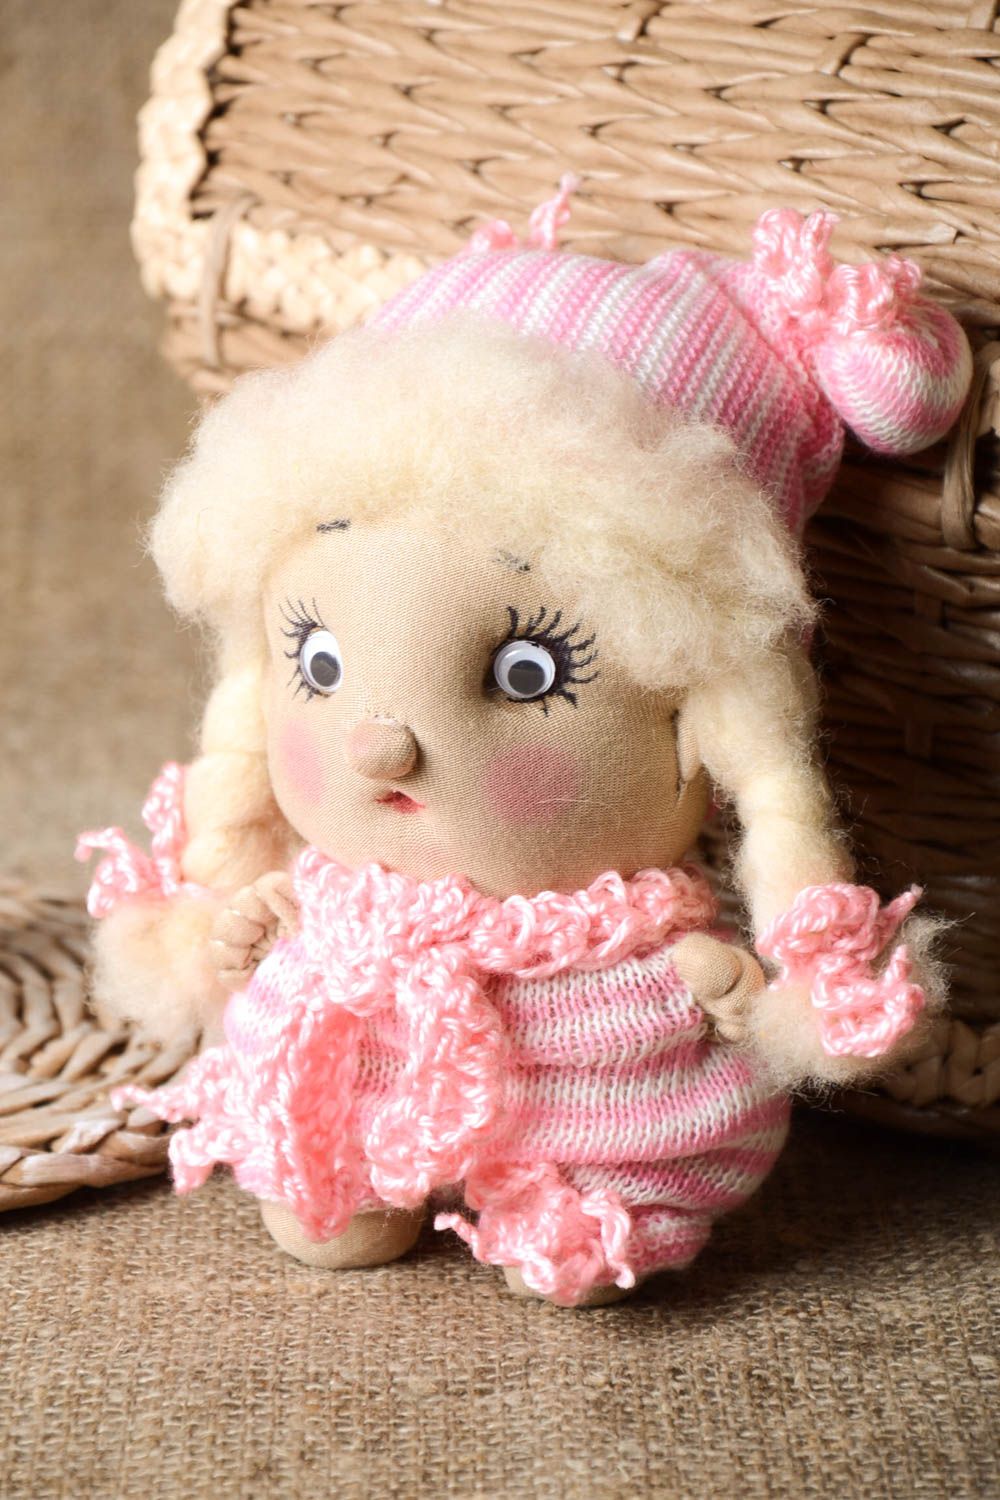 Puppe handgemacht Kinder Puppe Geschenk Idee ausgefallenes Spielzeug hübsch foto 1